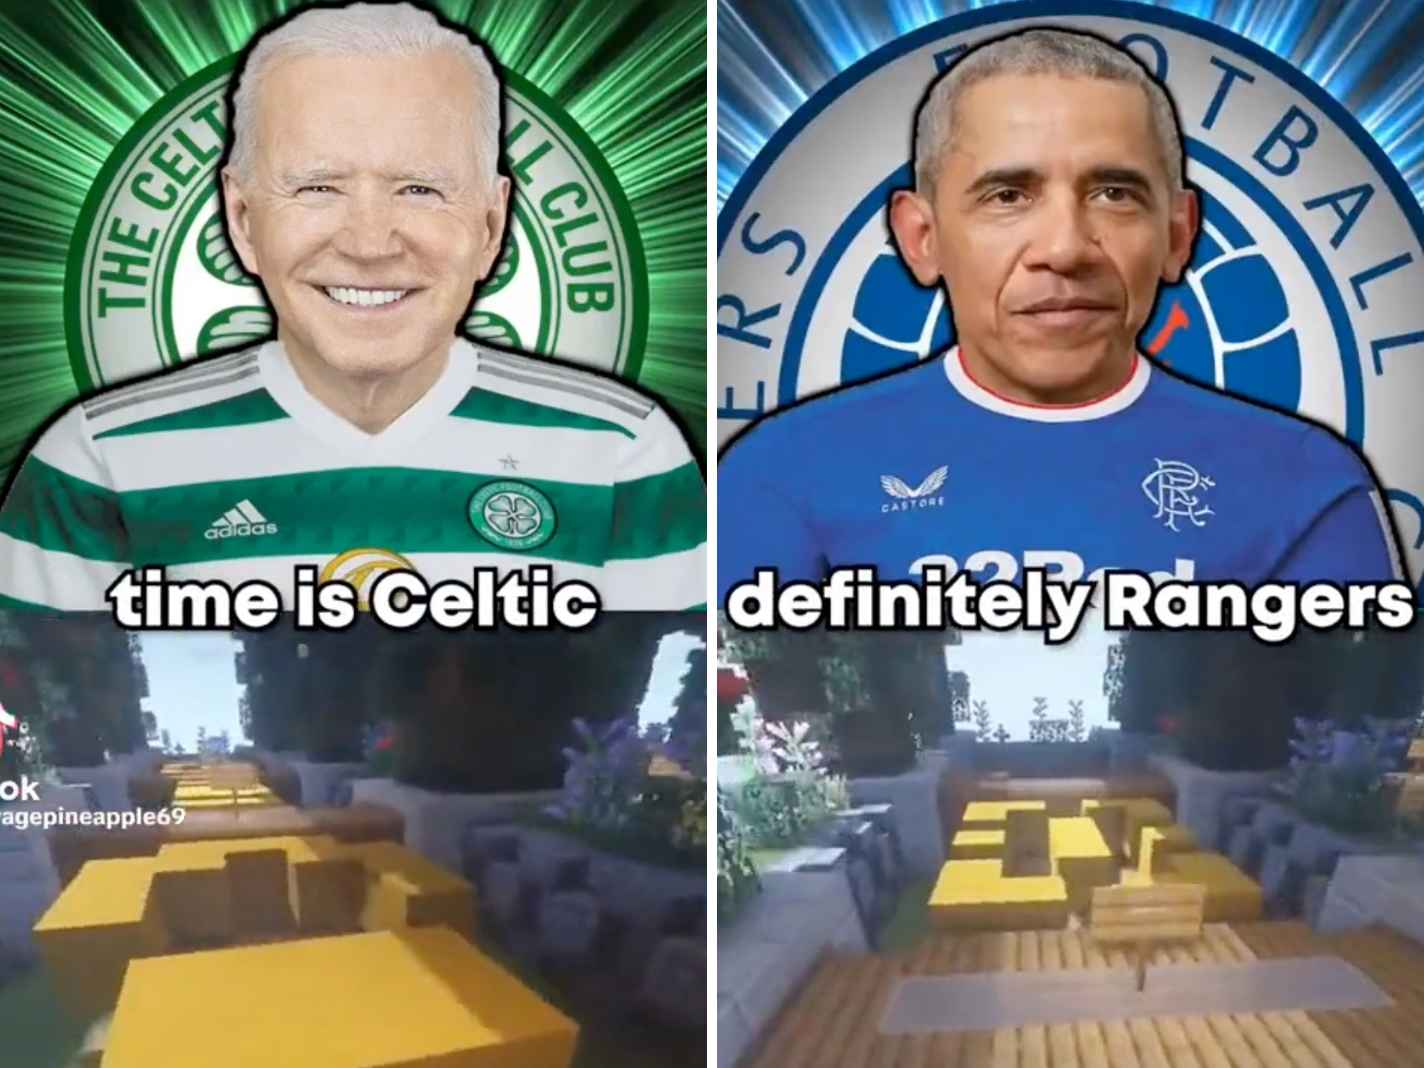 Celtic or Rangers: Biden and Obama Settle the Score in Viral TikTok Deepfake